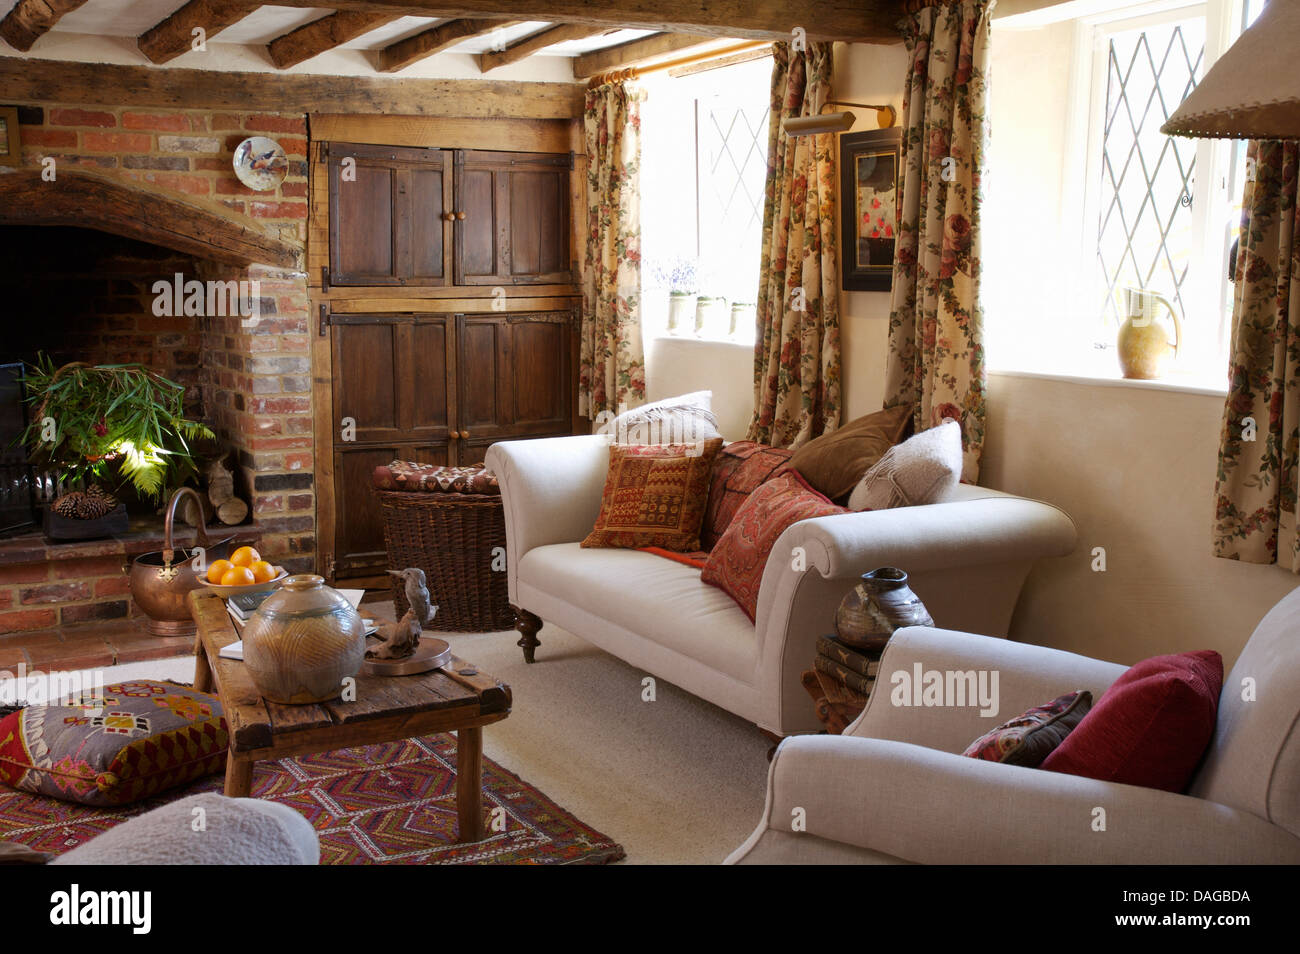 Divani bianchi accatastati con cuscini e rustico tavolo da caffè in legno in cottage in salotto con mattoni a vista camino Foto Stock